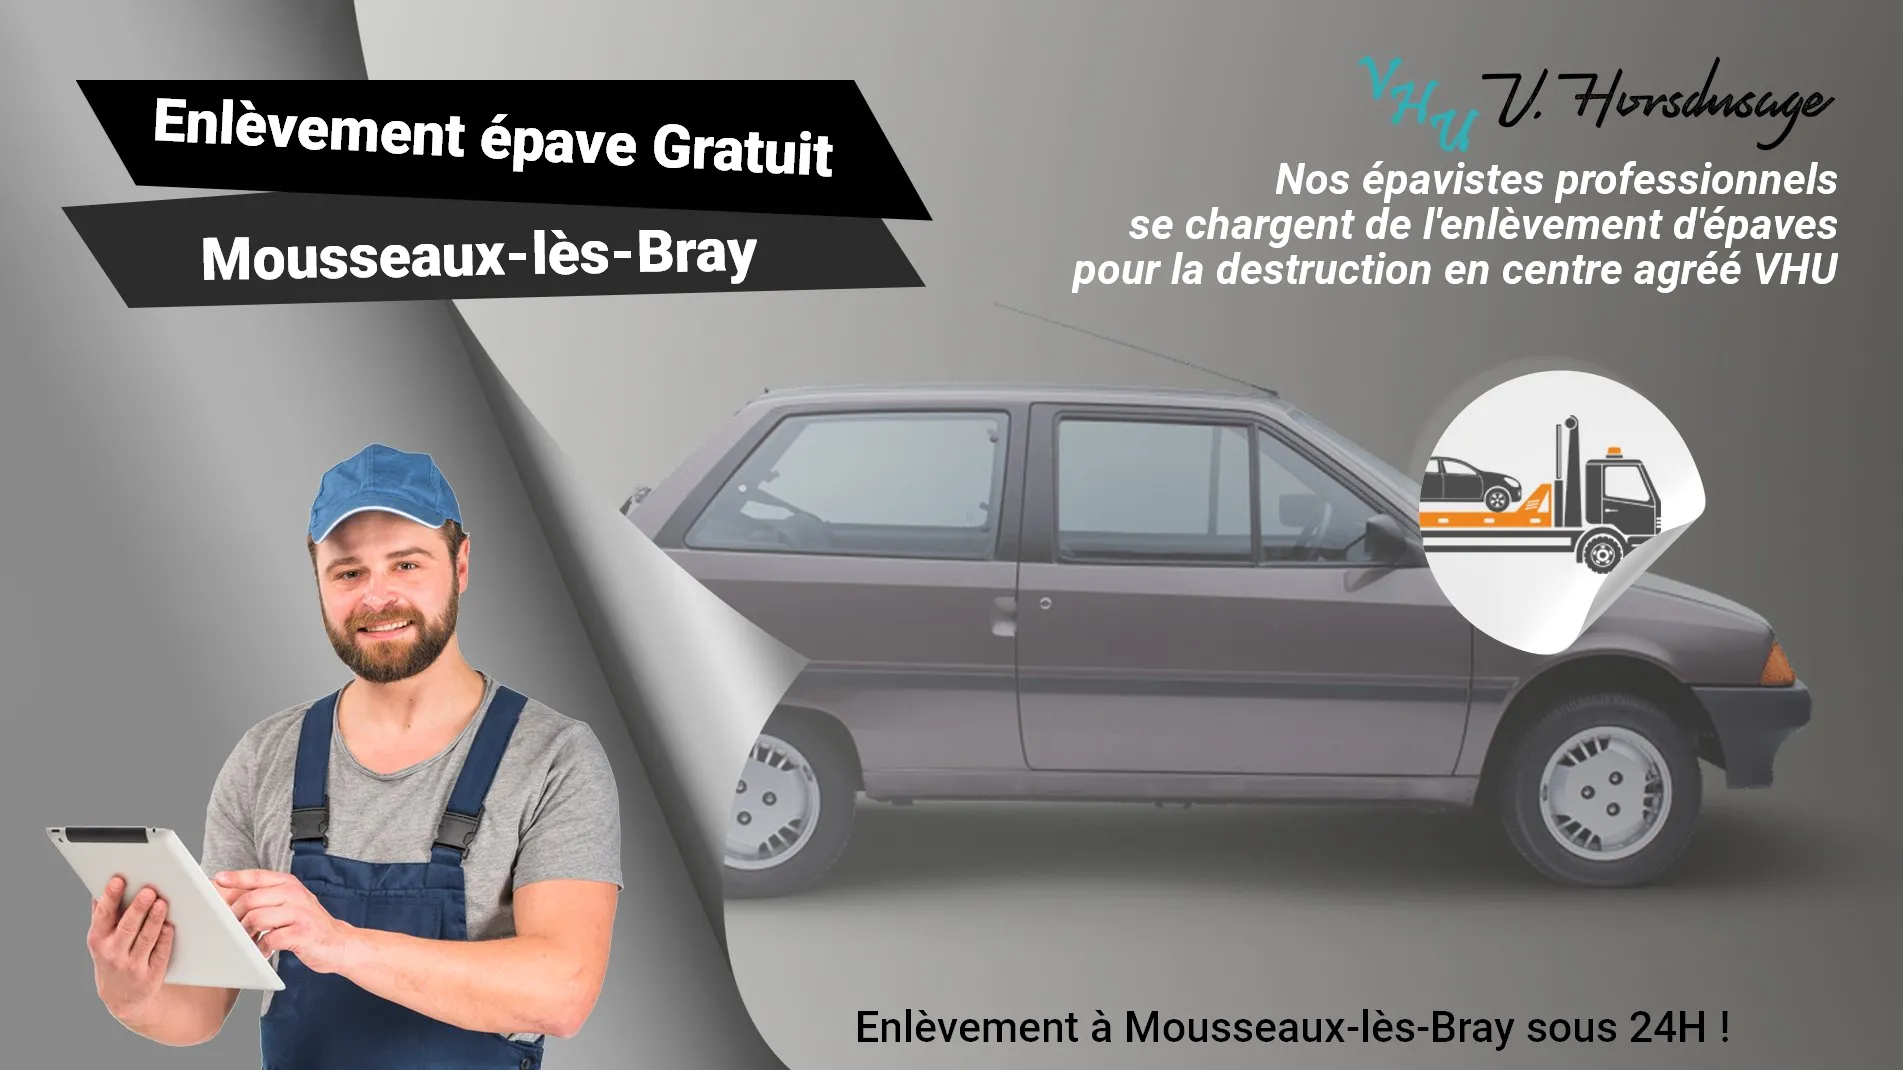 Pour un enlèvement gratuit à Mousseaux-lès-Bray, contactez nos épavistes agréé VHU